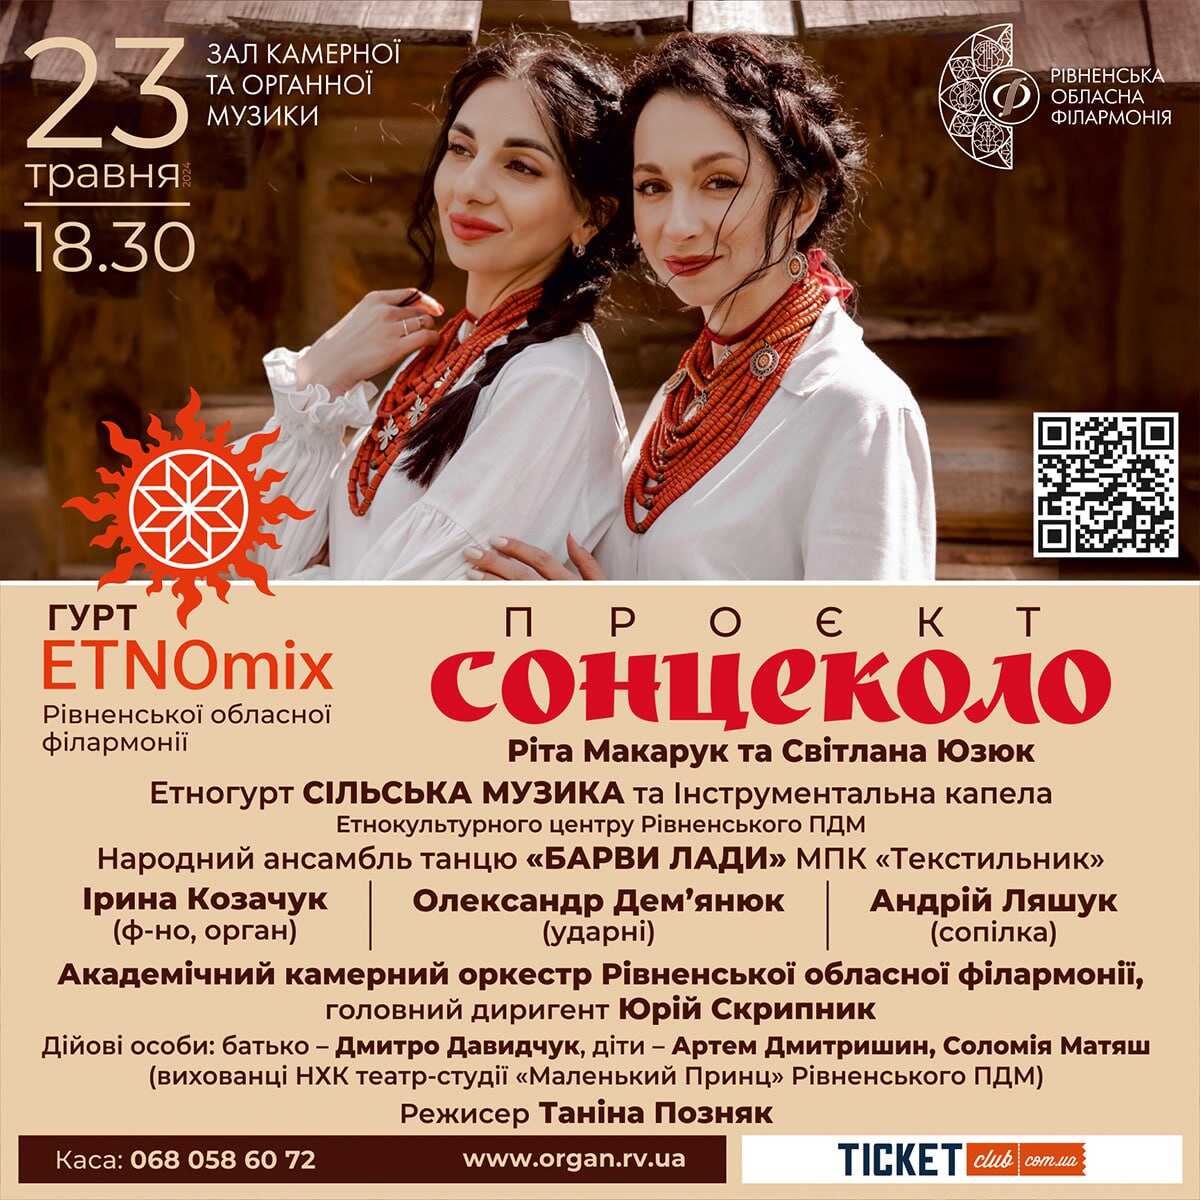 Рівнян та гостей міста запрошують на музичну подію «Сонцеколо» до обласної філармонії